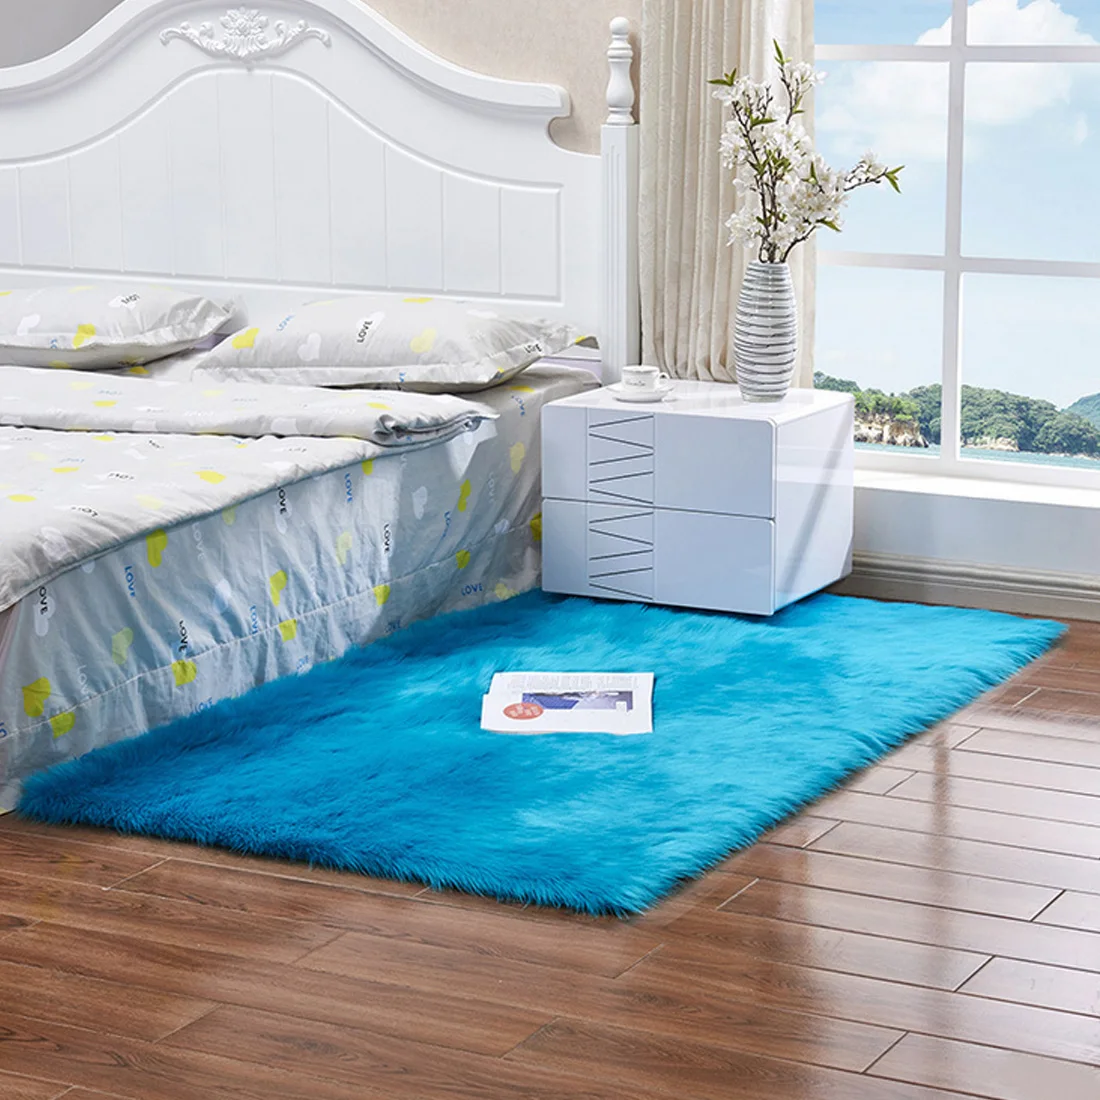 См 60x120 см мягкий лохматый ковер для гостиной спальня Европейский дом теплый плюшевый напольные коврики пушистые коврики детская комната